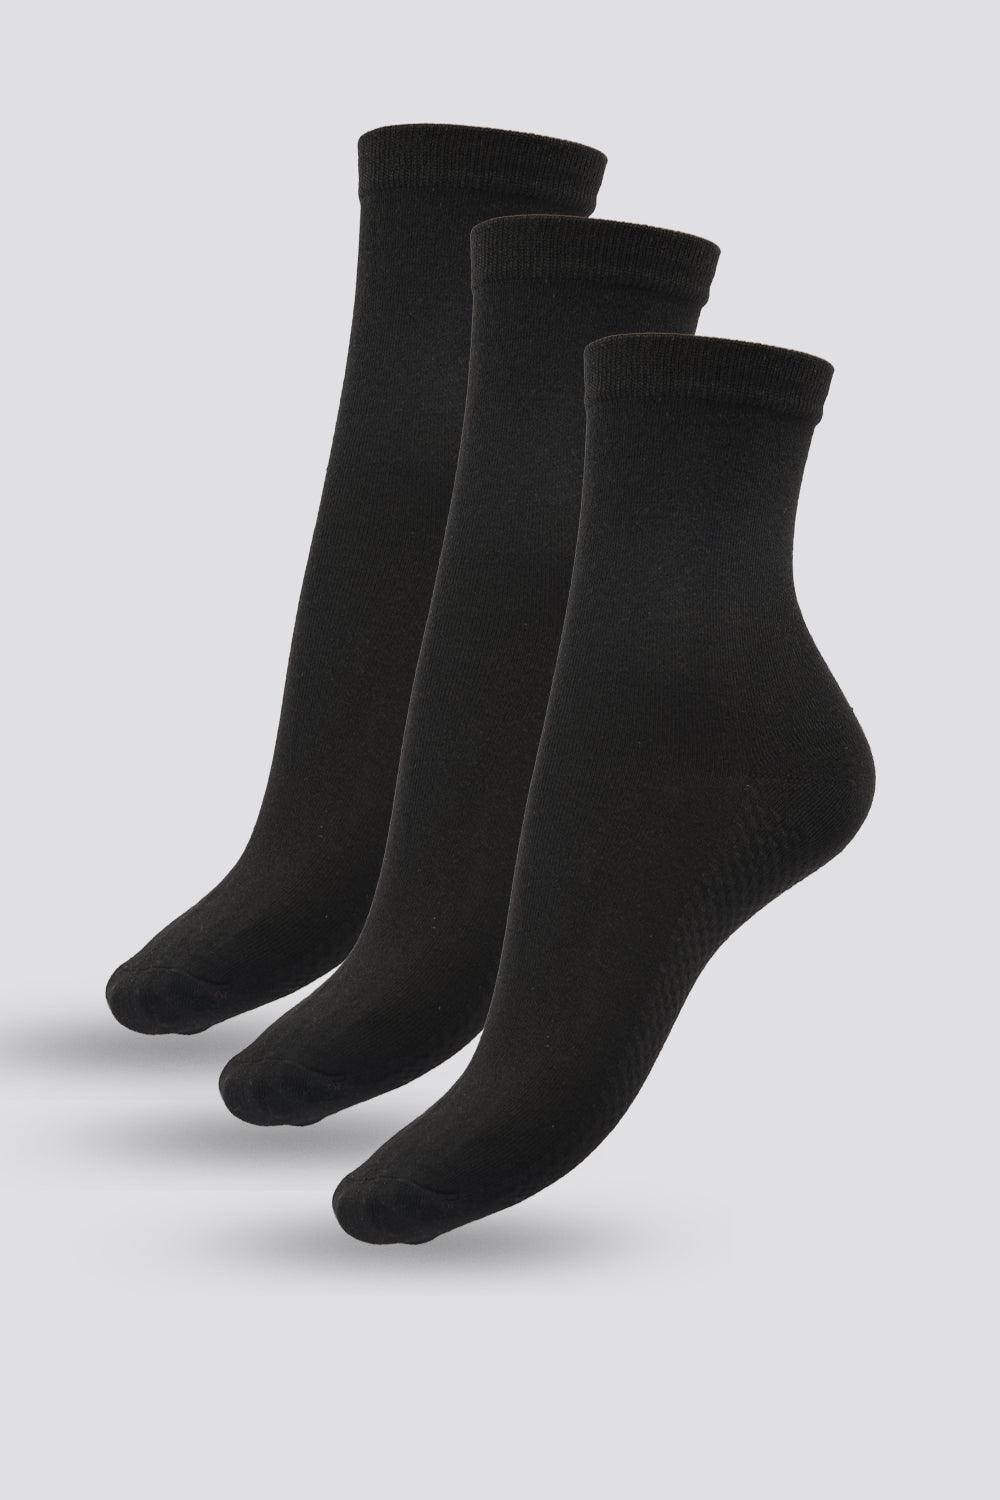 3 זוגות גרביים שחורים קלאסי 36-41 - MASHBIR//365